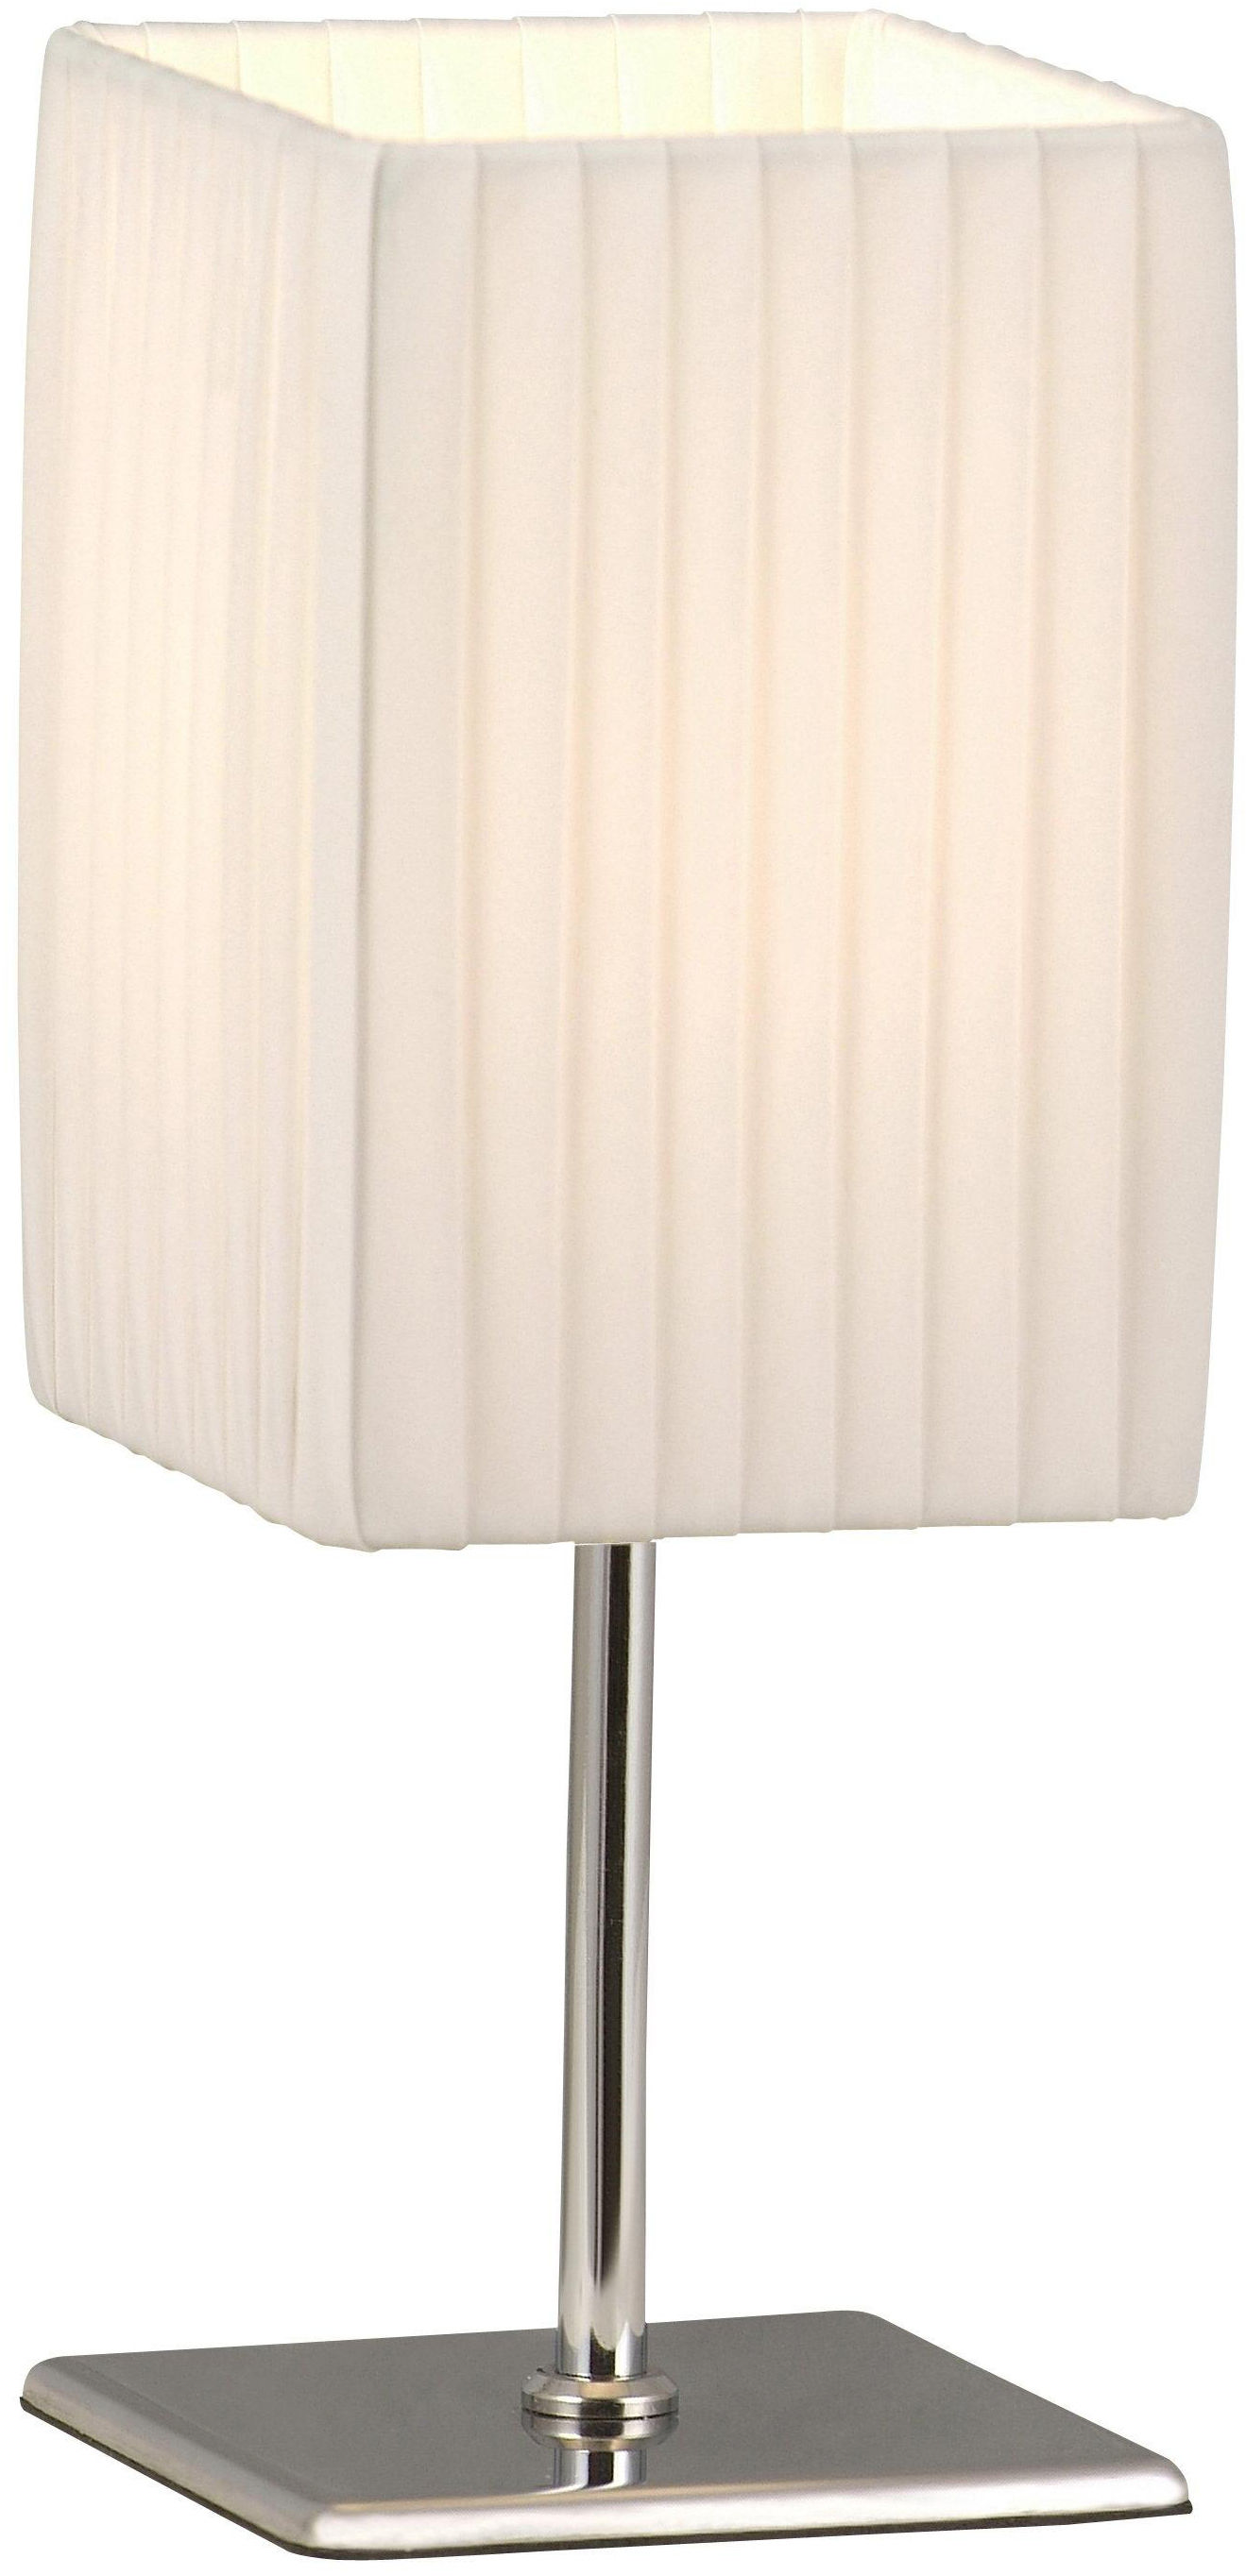 Globo lampa stołowa Bailey 24660 chrom, tkanina biała plisowana